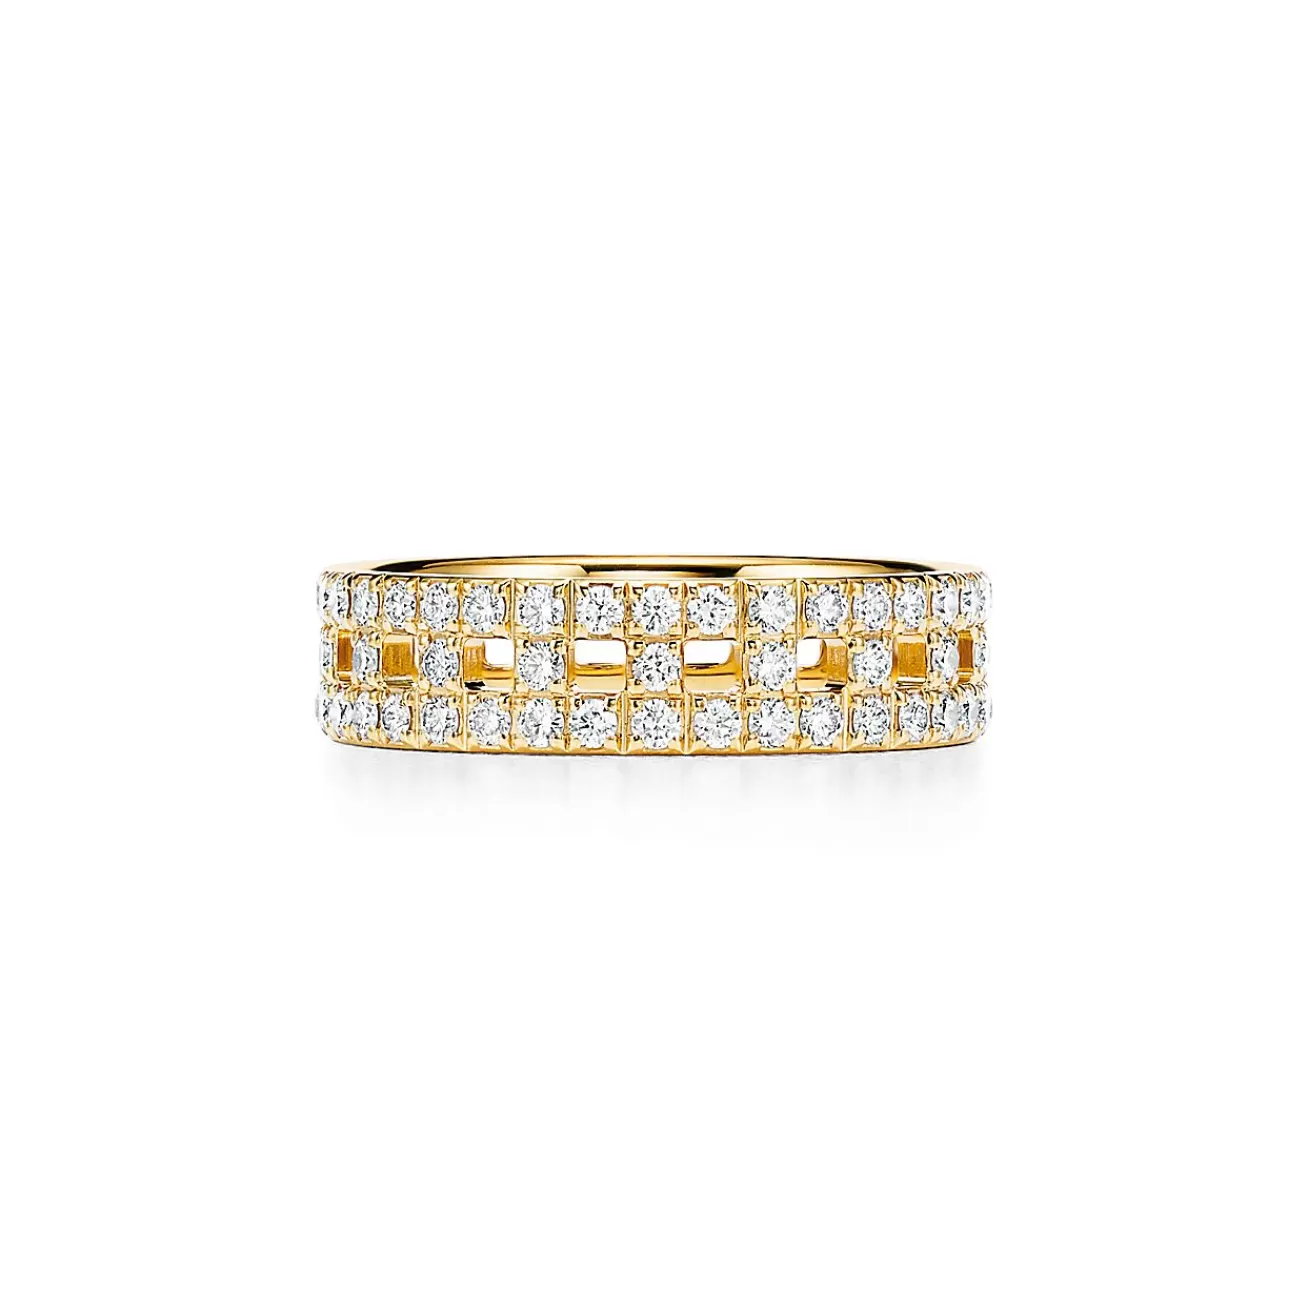 Tiffany & Co. Tiffany T True wide ring in 18k gold with pavé diamonds, 5.5 mm wide. | ^Women Rings | Men's Jewelry